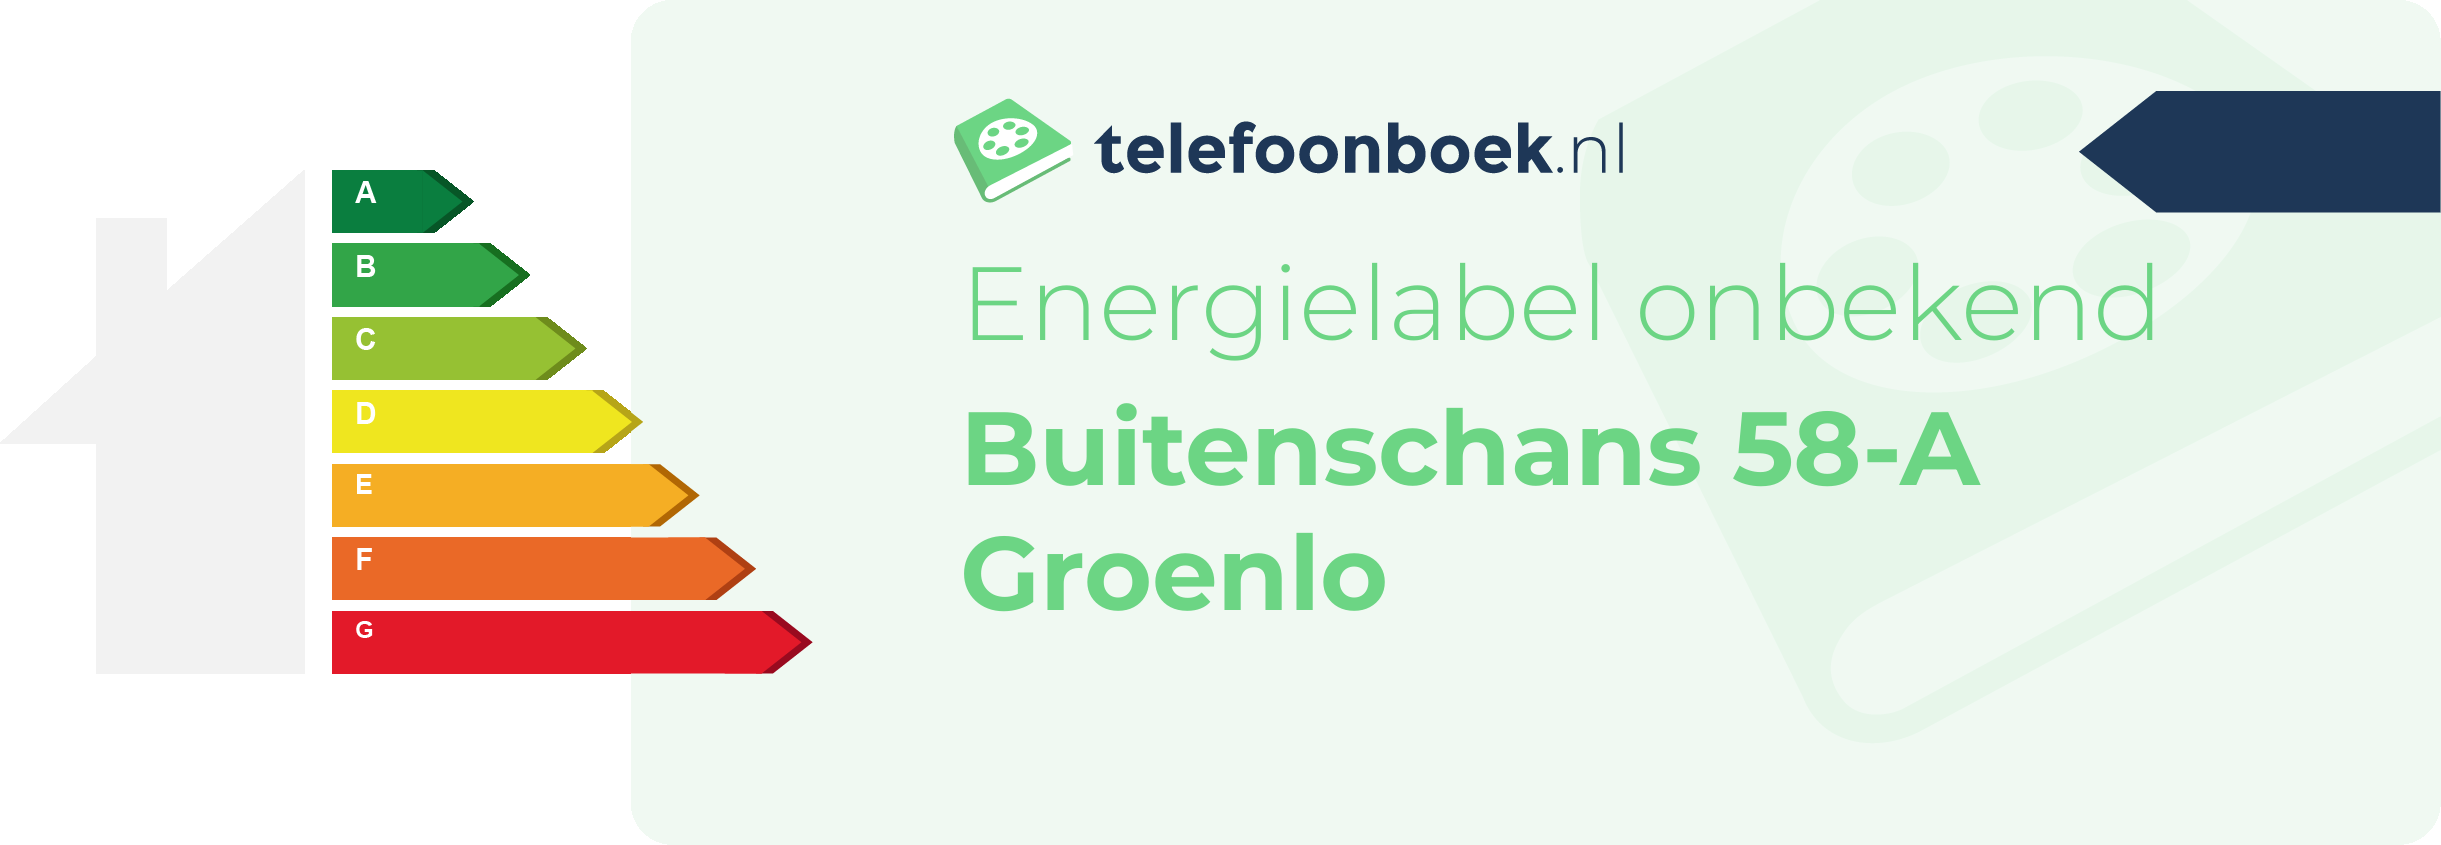 Energielabel Buitenschans 58-A Groenlo